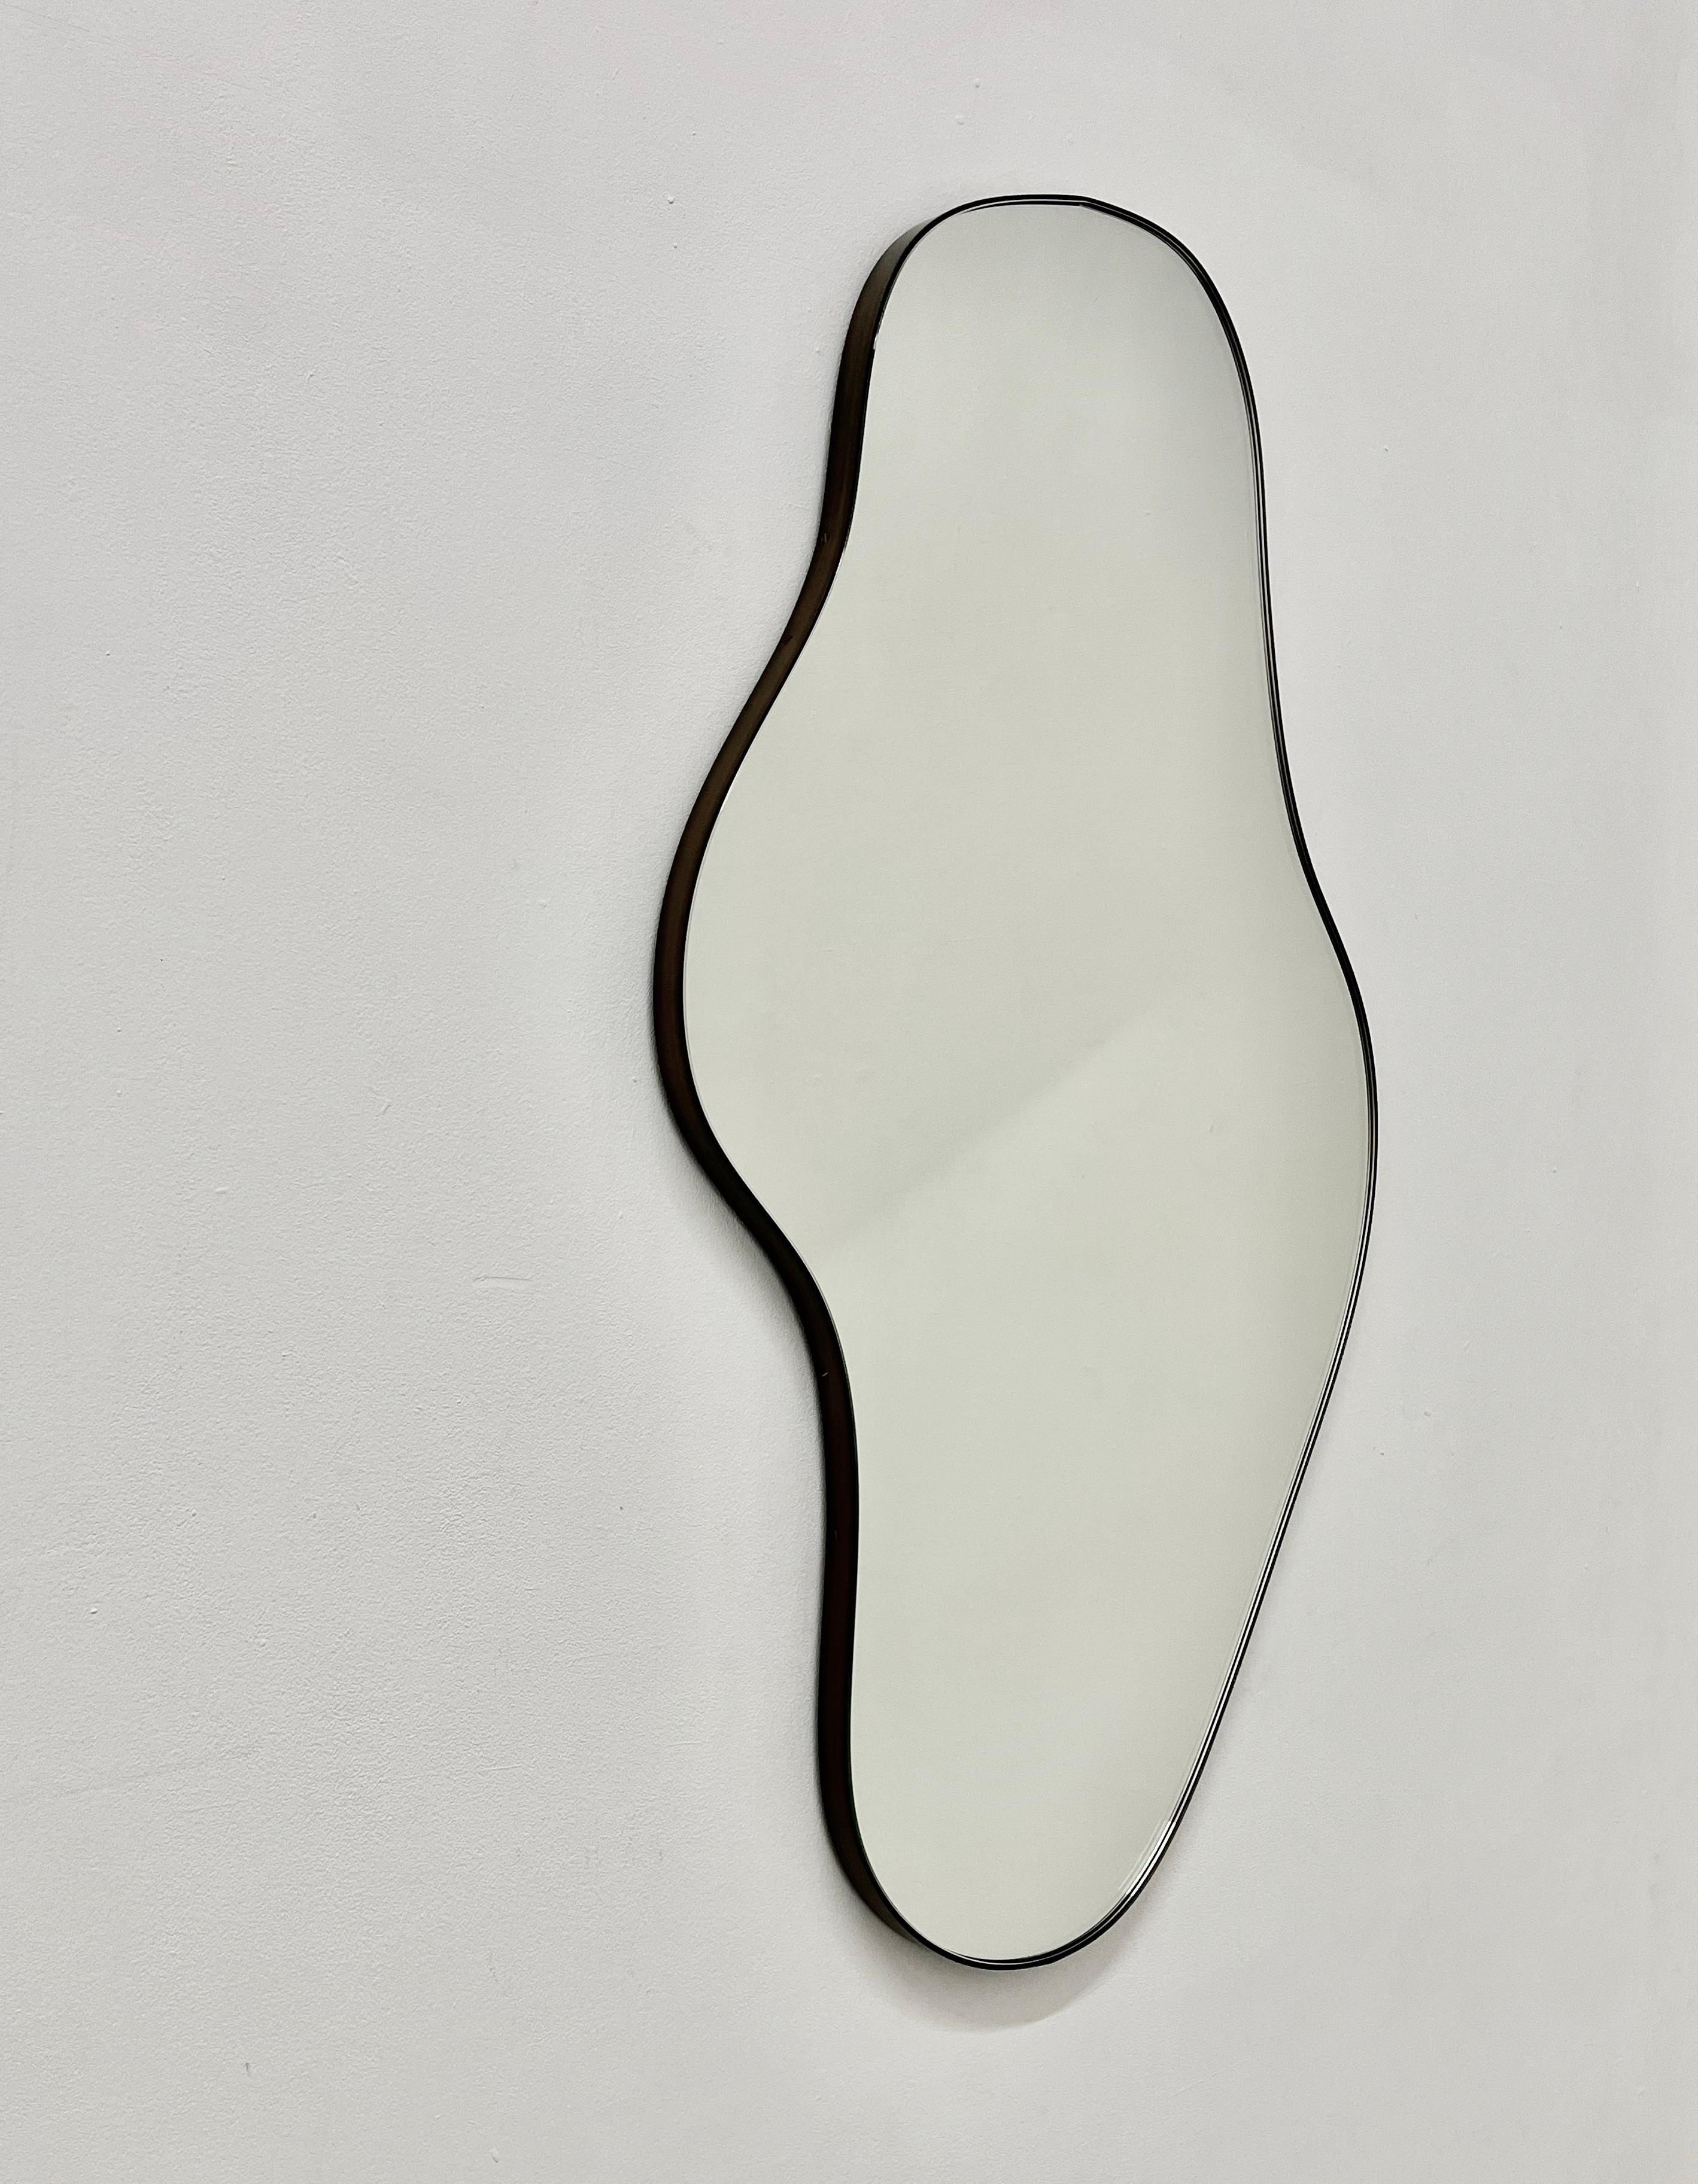 Miroir ludique et moderne de forme organique avec un cadre en laiton massif patiné bronze.

Équipé d'un crochet en laiton ou d'une barre en Z en aluminium (selon la taille du miroir) qui permet de suspendre le miroir dans quatre positions